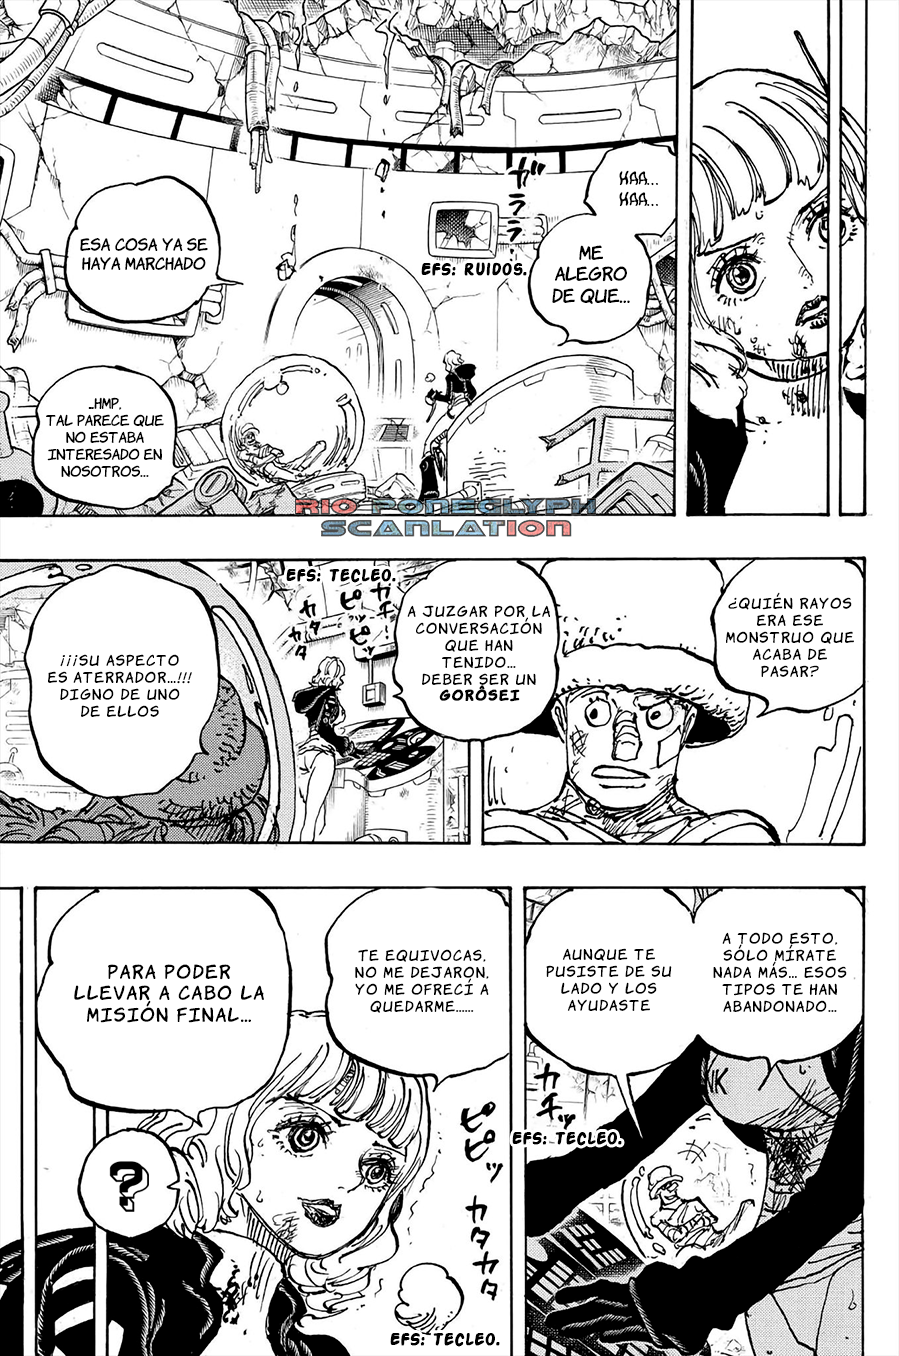 español - One Piece Manga 1112 [Español] [Rio Poneglyph Scans] 08-2